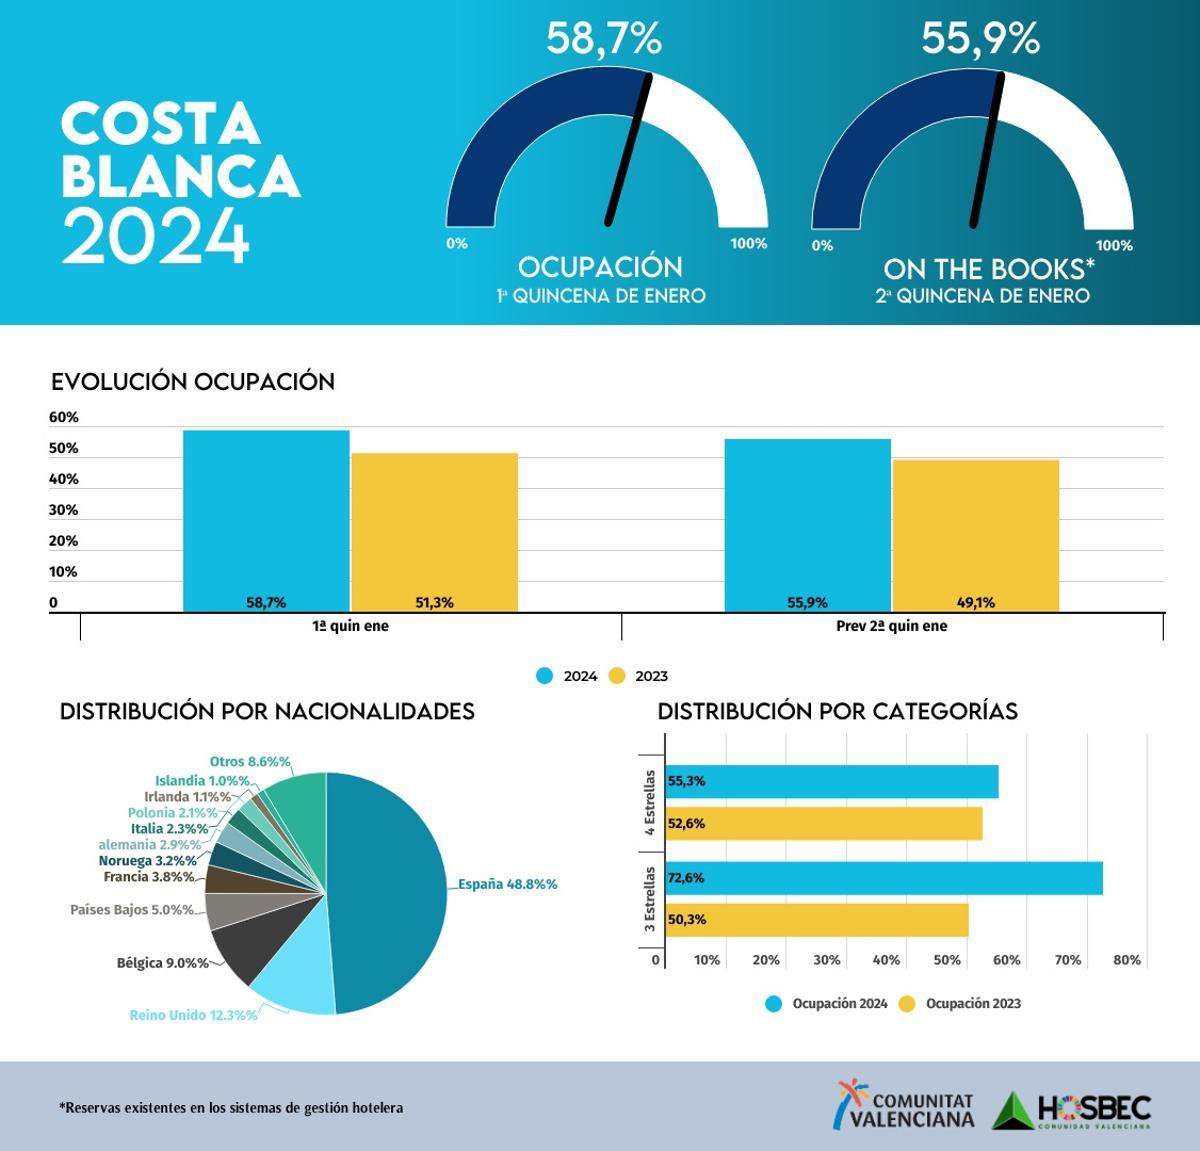 Datos de Hosbec de las previsiones de ocupación de Costa Blanca en enero.